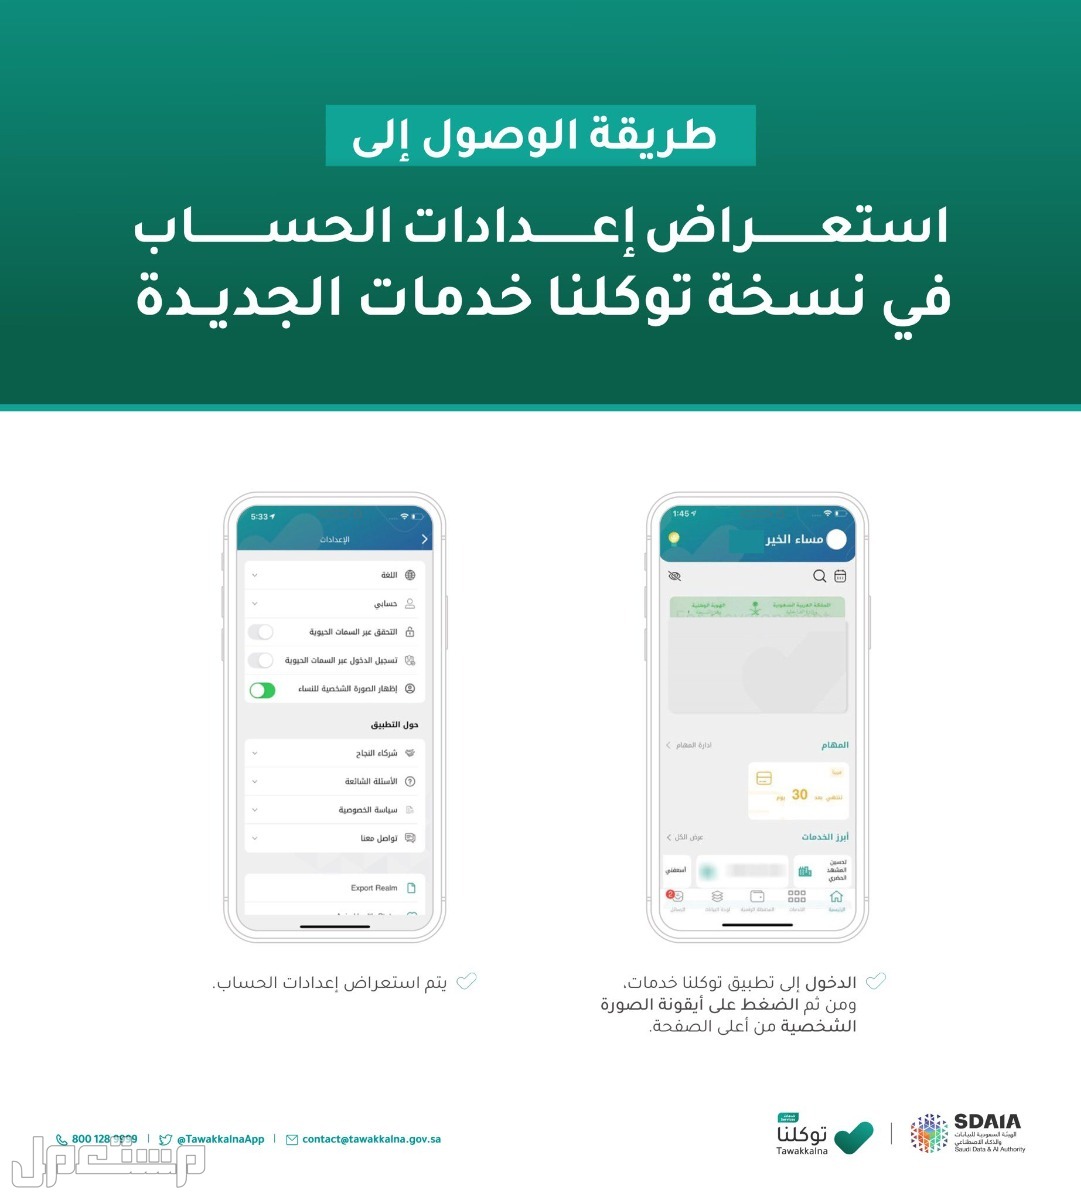 خطوات استعراض إعدادات الحساب في توكلنا خدمات في الكويت خطوات استعراض إعدادات الحساب في توكلنا